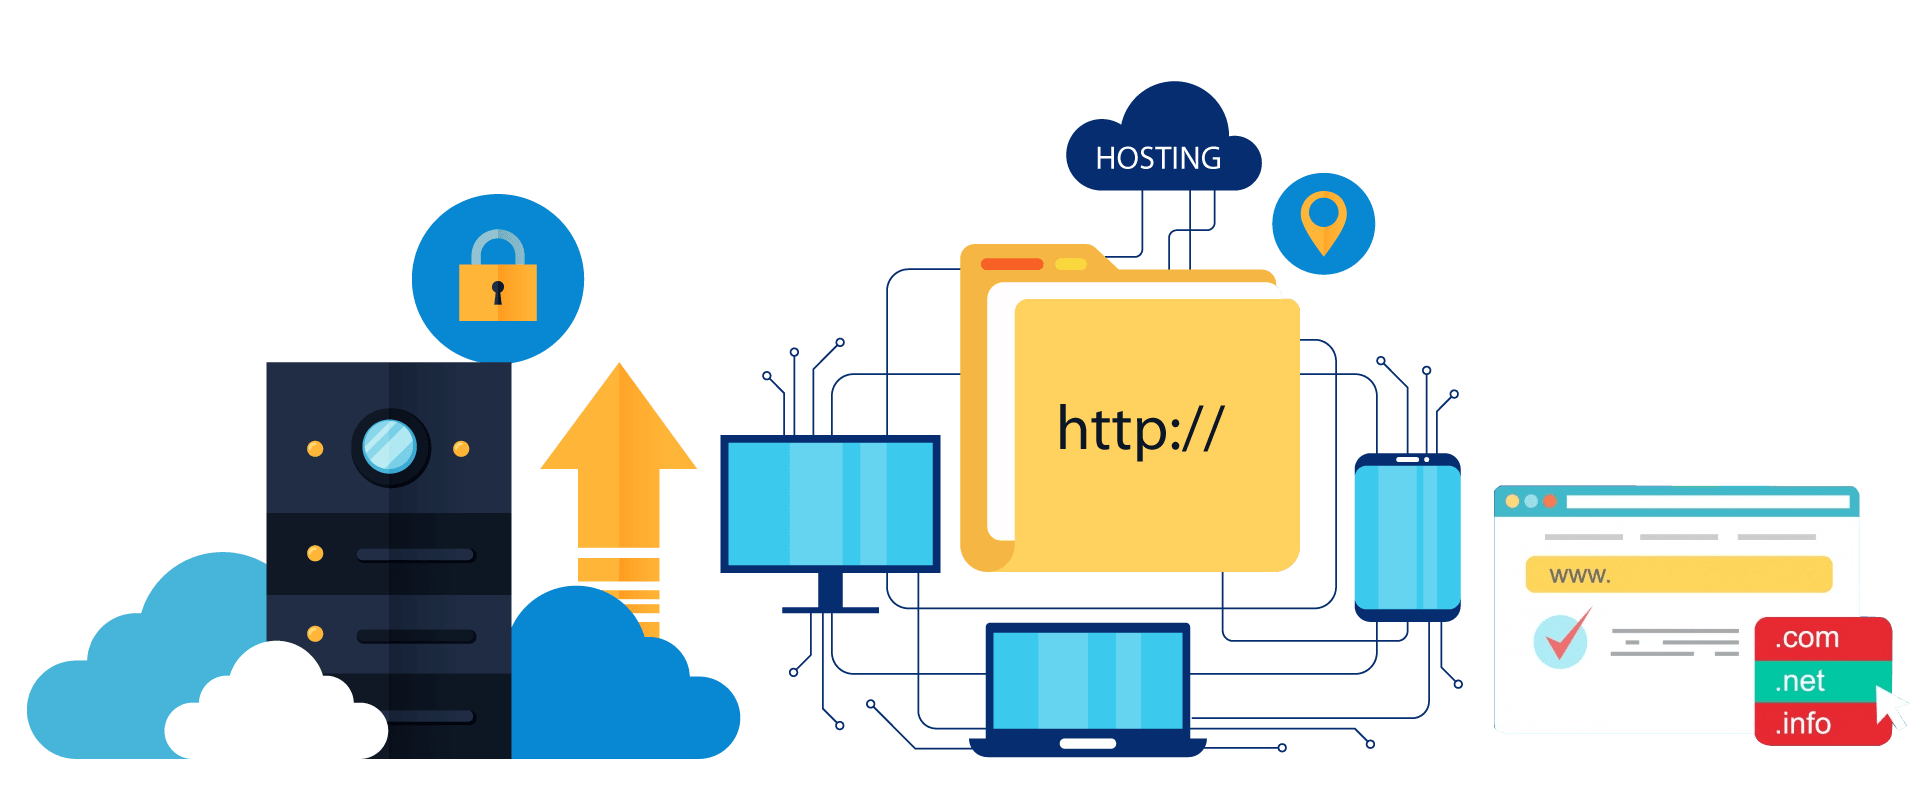 web hosting abu dhabi